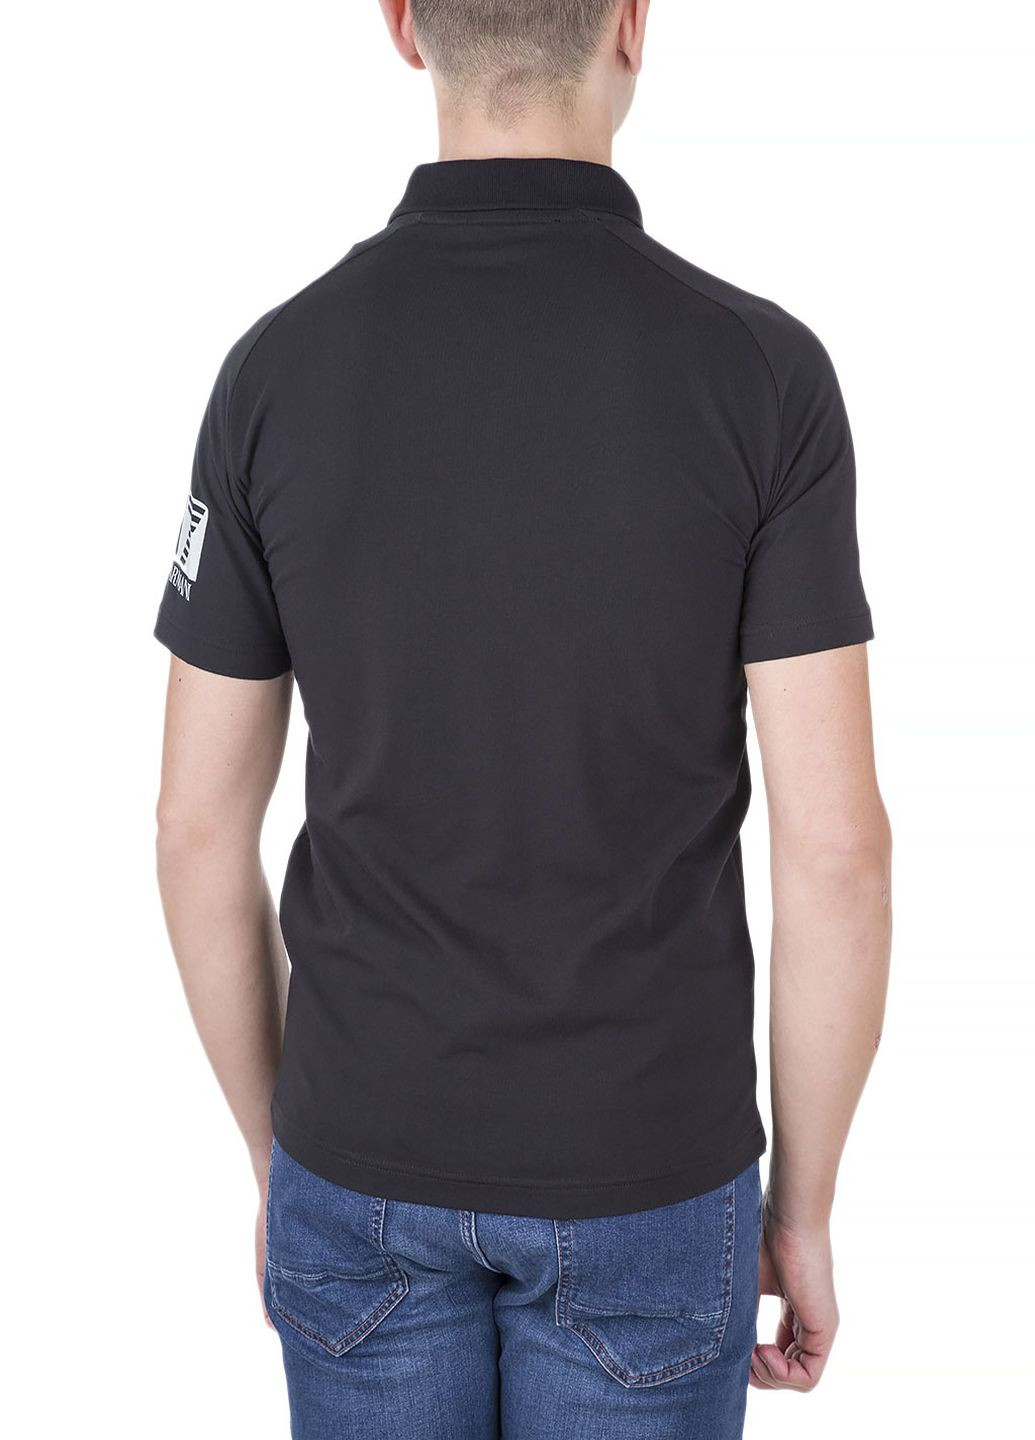 Черная футболка-поло для мужчин ARMANI EA7 с логотипом